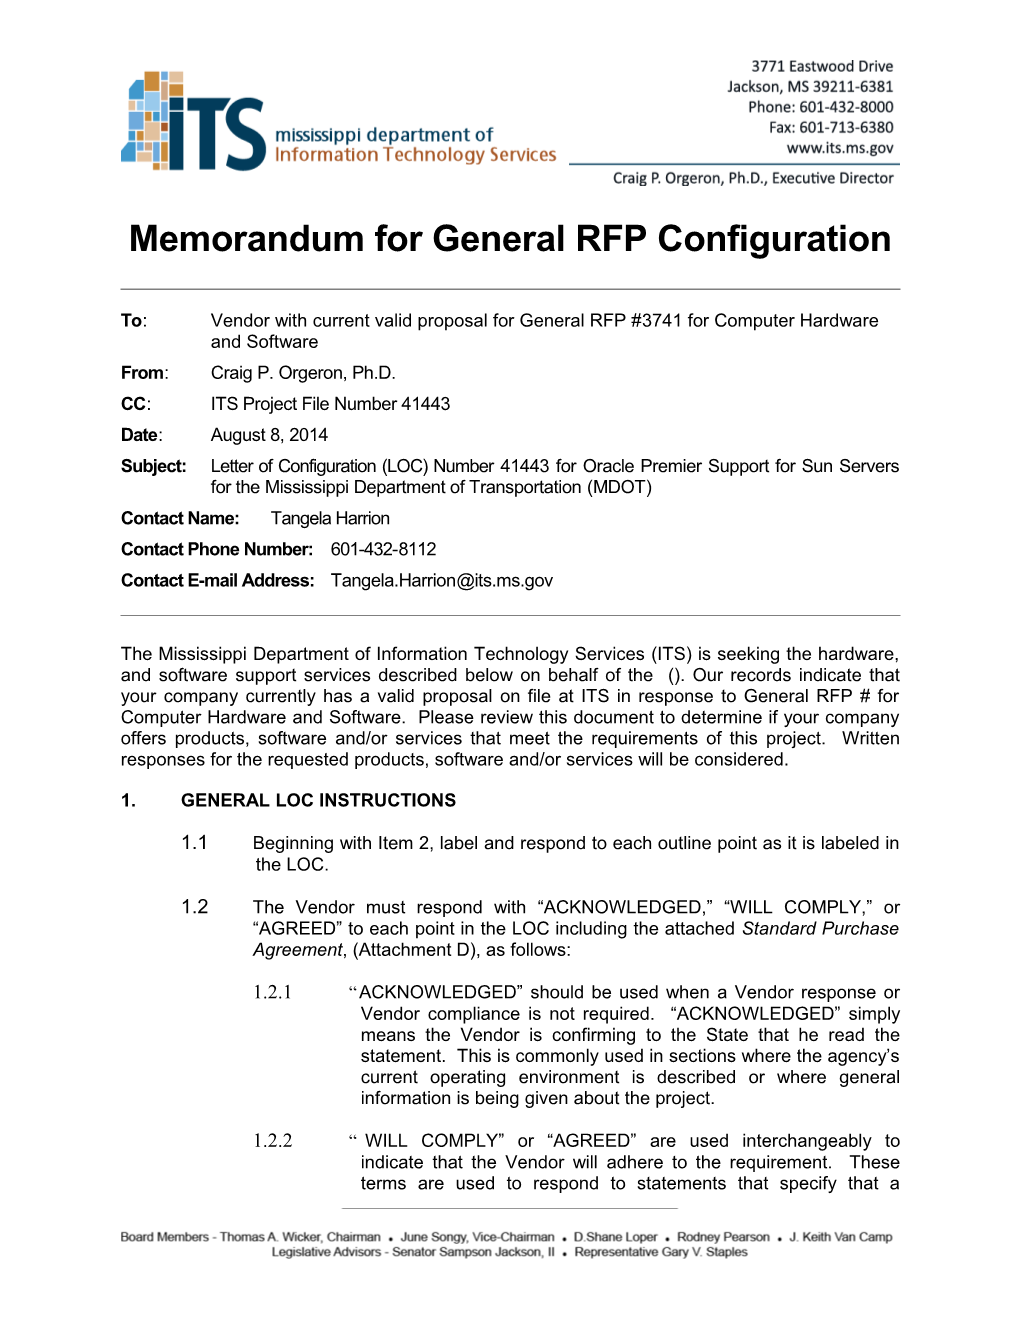 Memorandum for General RFP Configuration s11